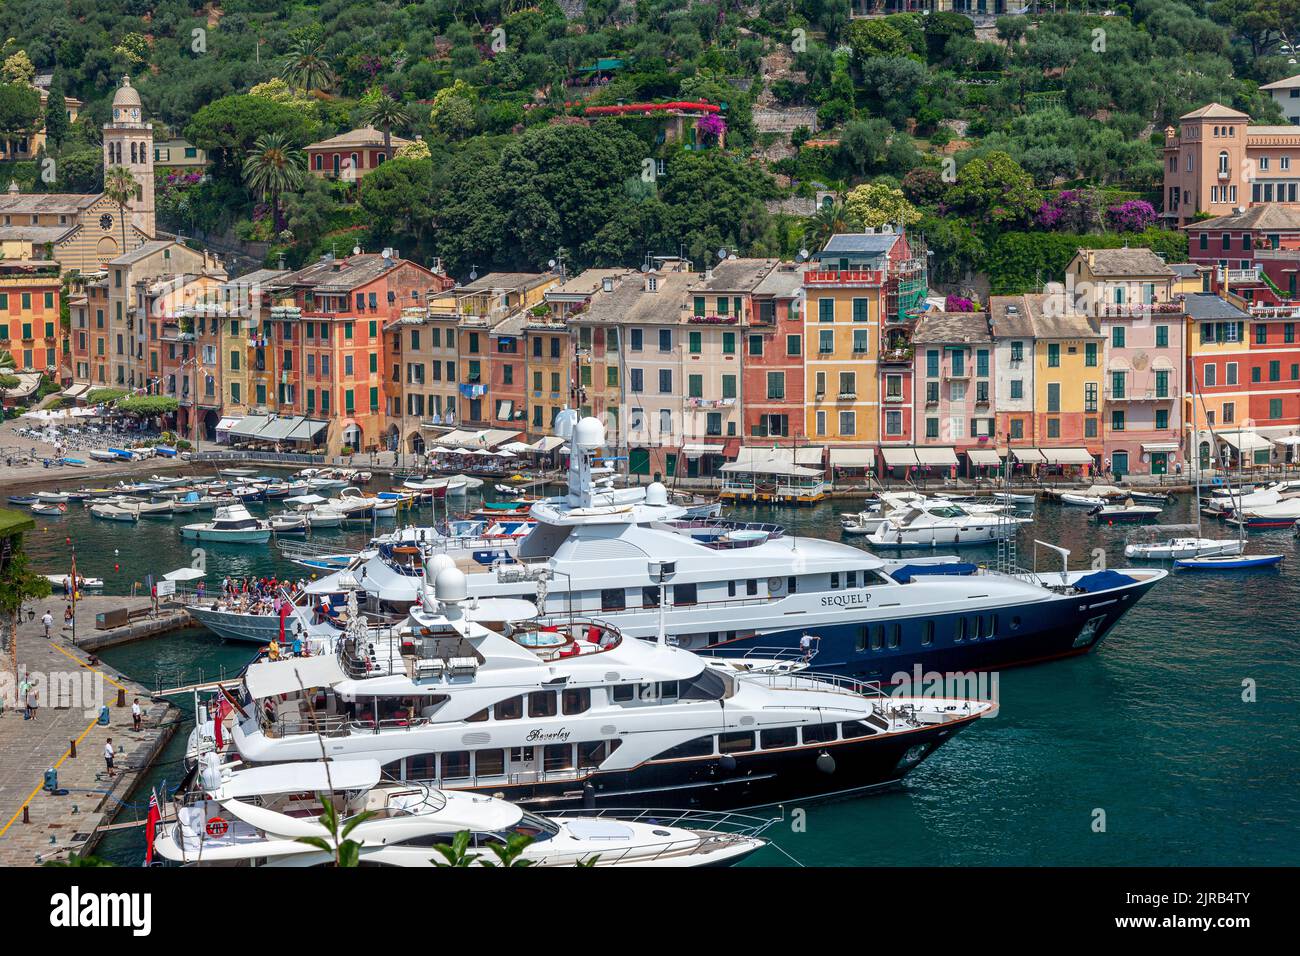 Boats moored in the tiny harbor town of Portofino, Liguria, Italy Stock Photo